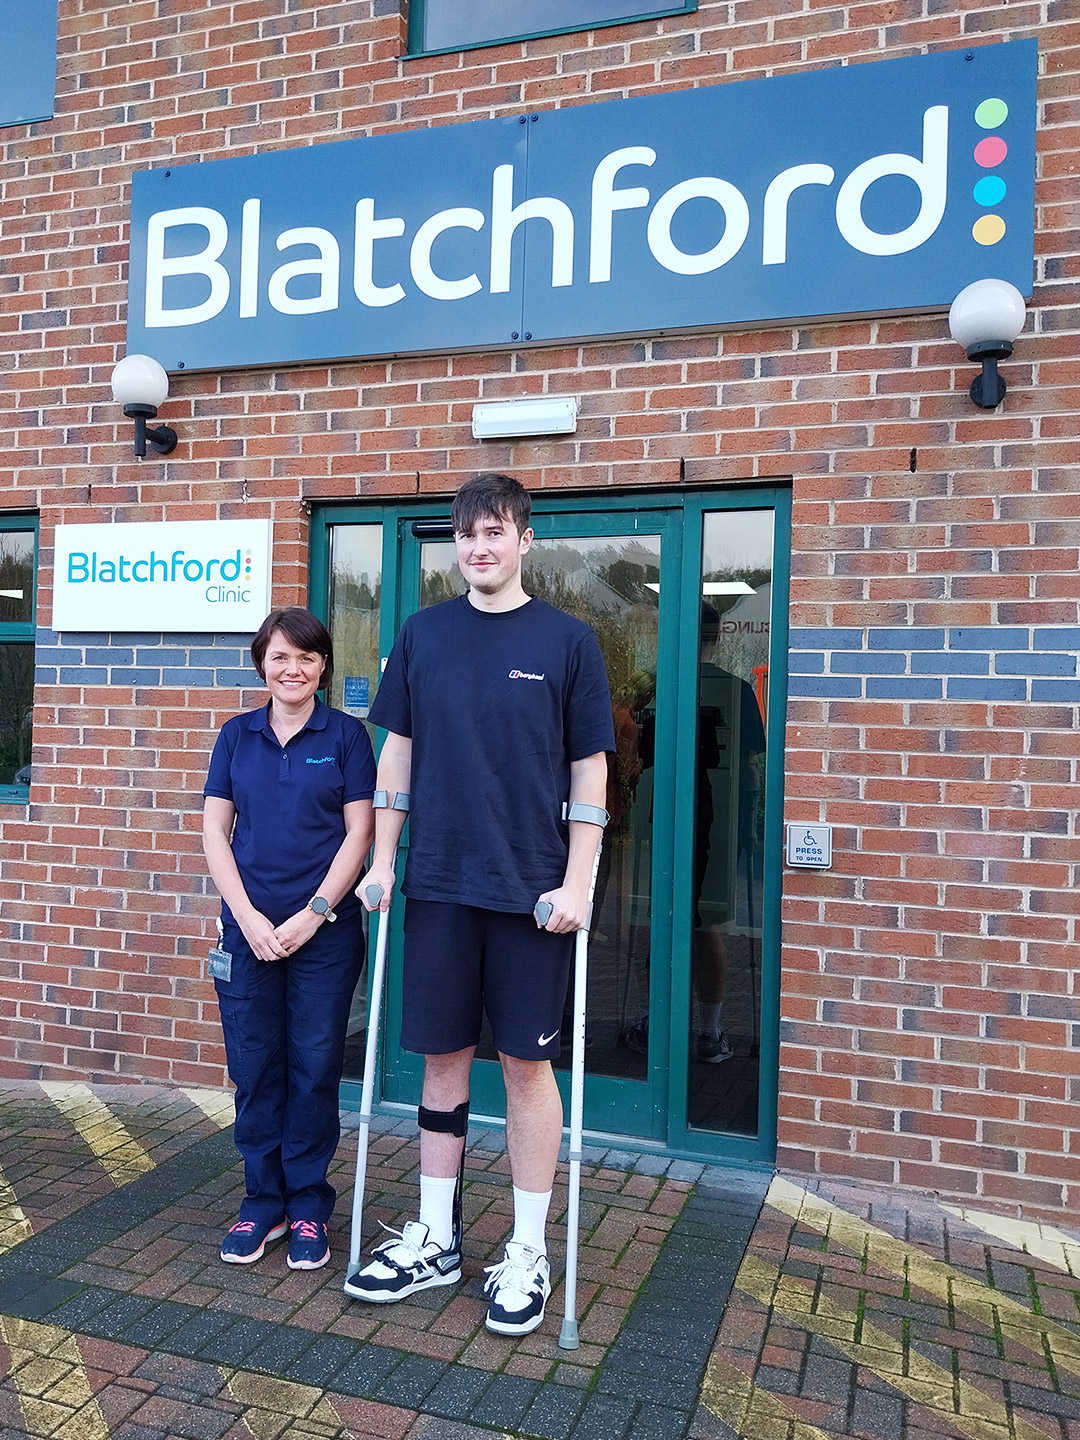 Fin erhält seine Turbomed-Fußstütze in unserer Klinik in Blatchford